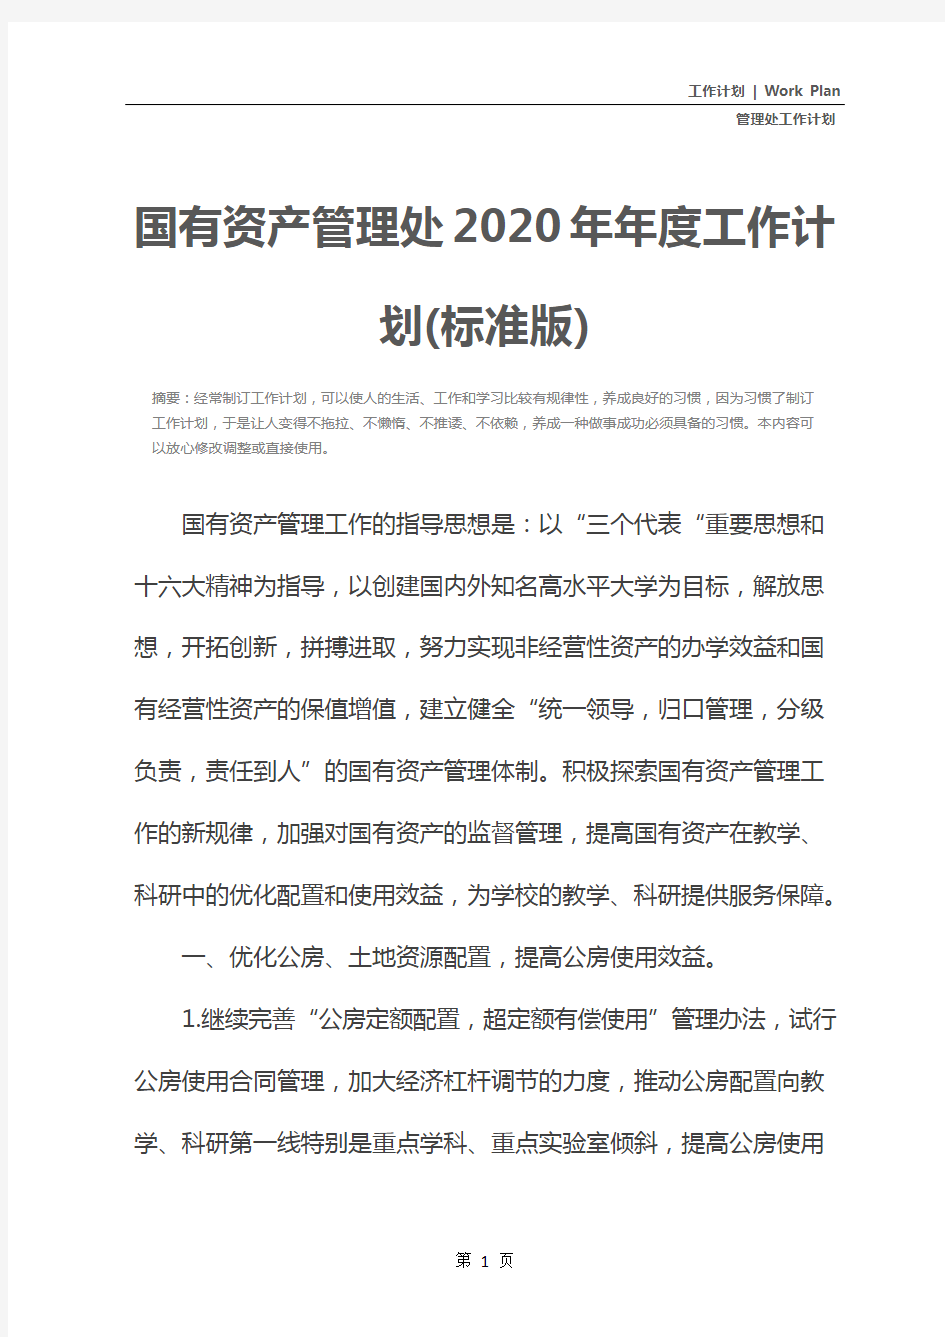 国有资产管理处2020年年度工作计划(标准版)